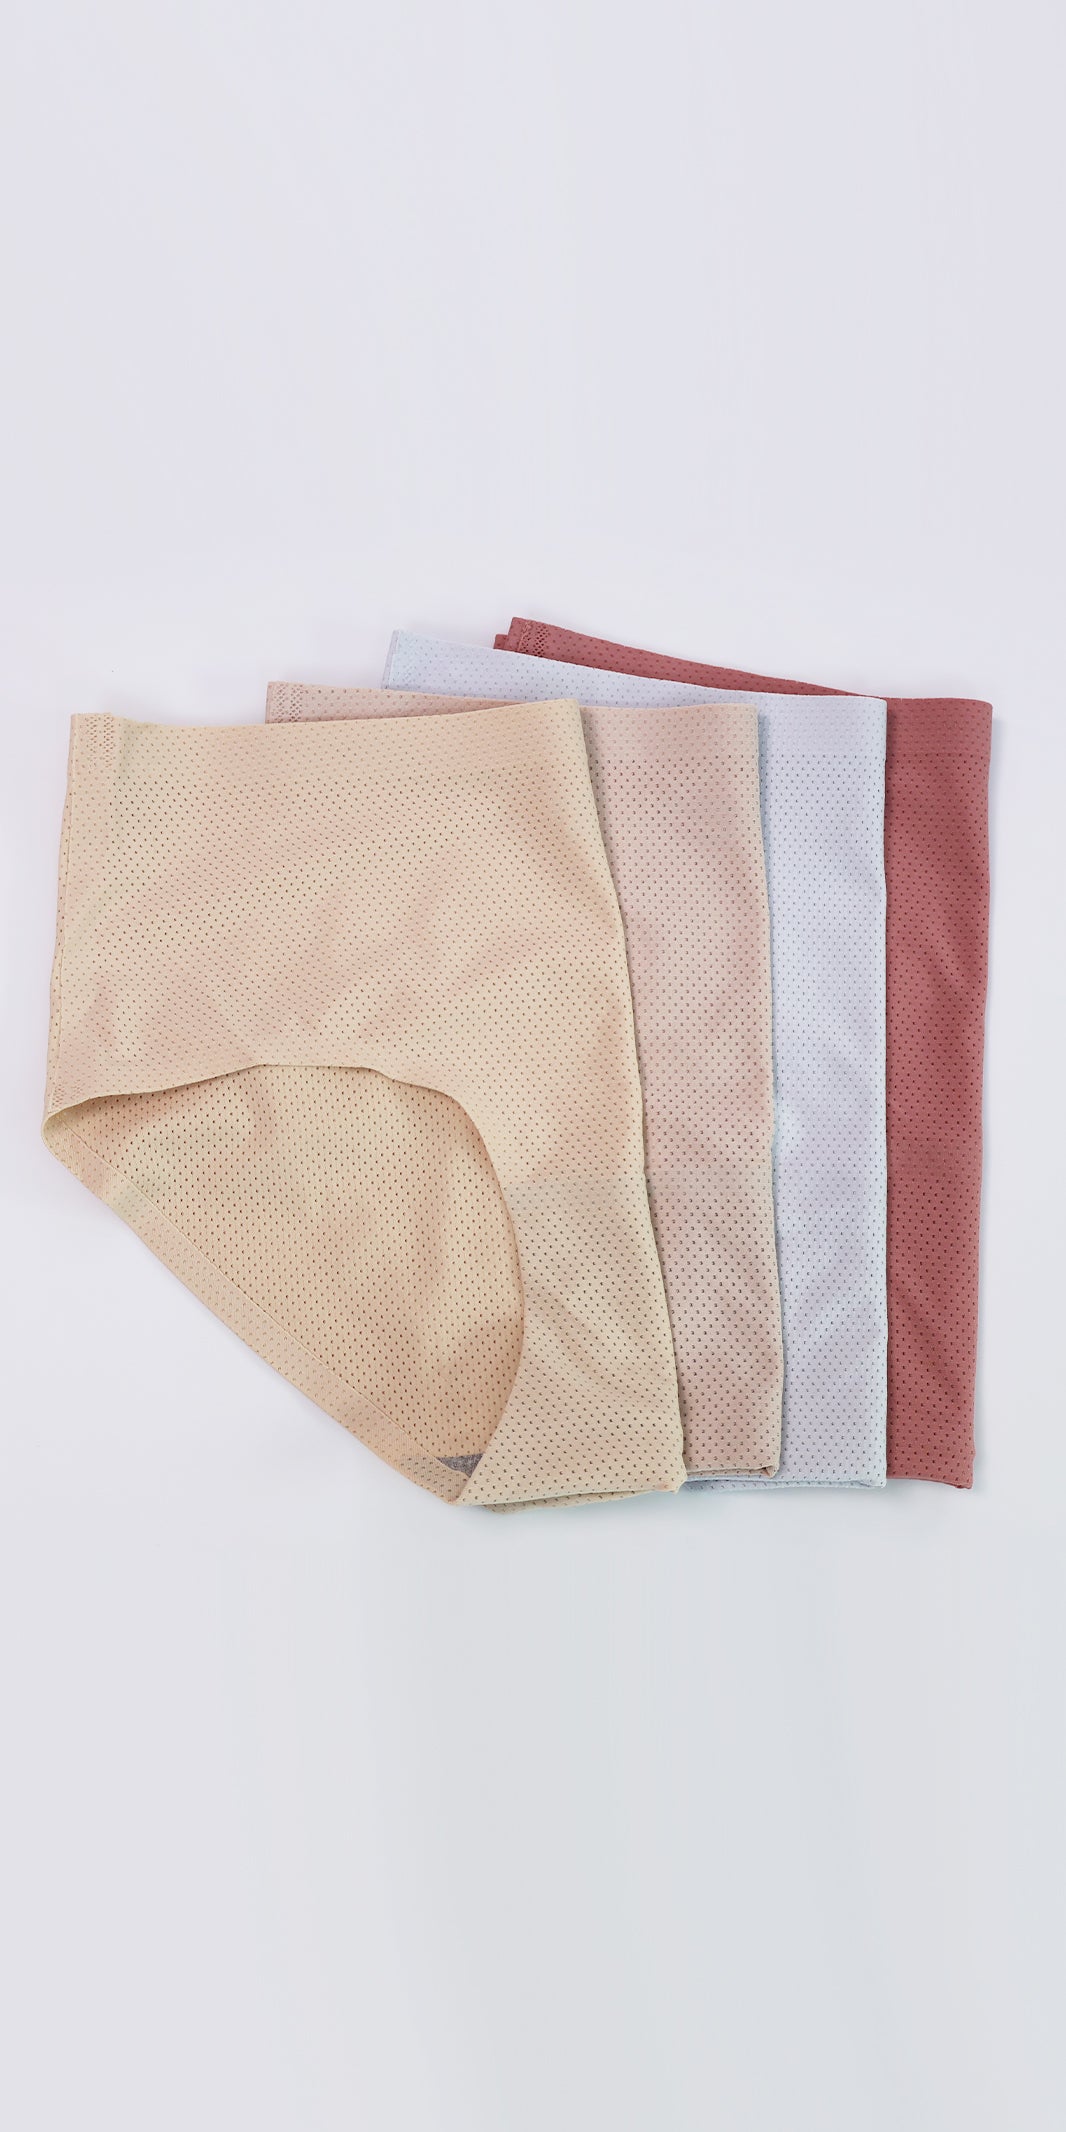 One Piece Seamless Ice Silk Mesh Antibacterial Cotton Crotch Panties